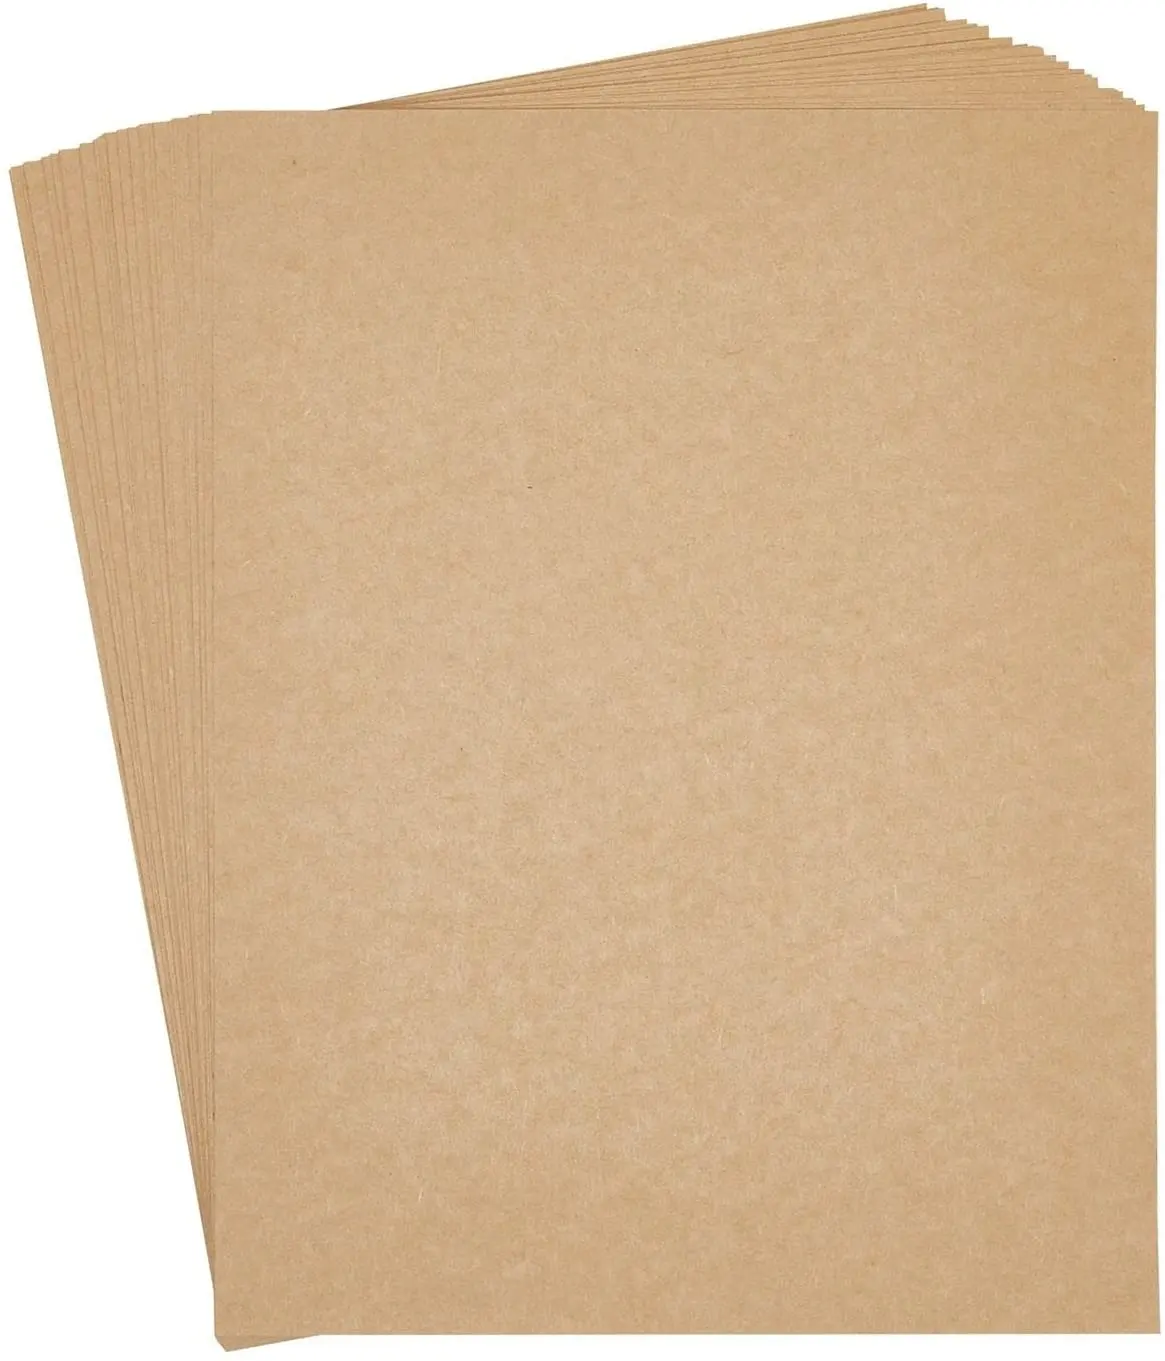 बॉक्स पैकिंग भूरे रंग क्राफ्ट पेपर 100 चादरें बैग प्रिंट कागज